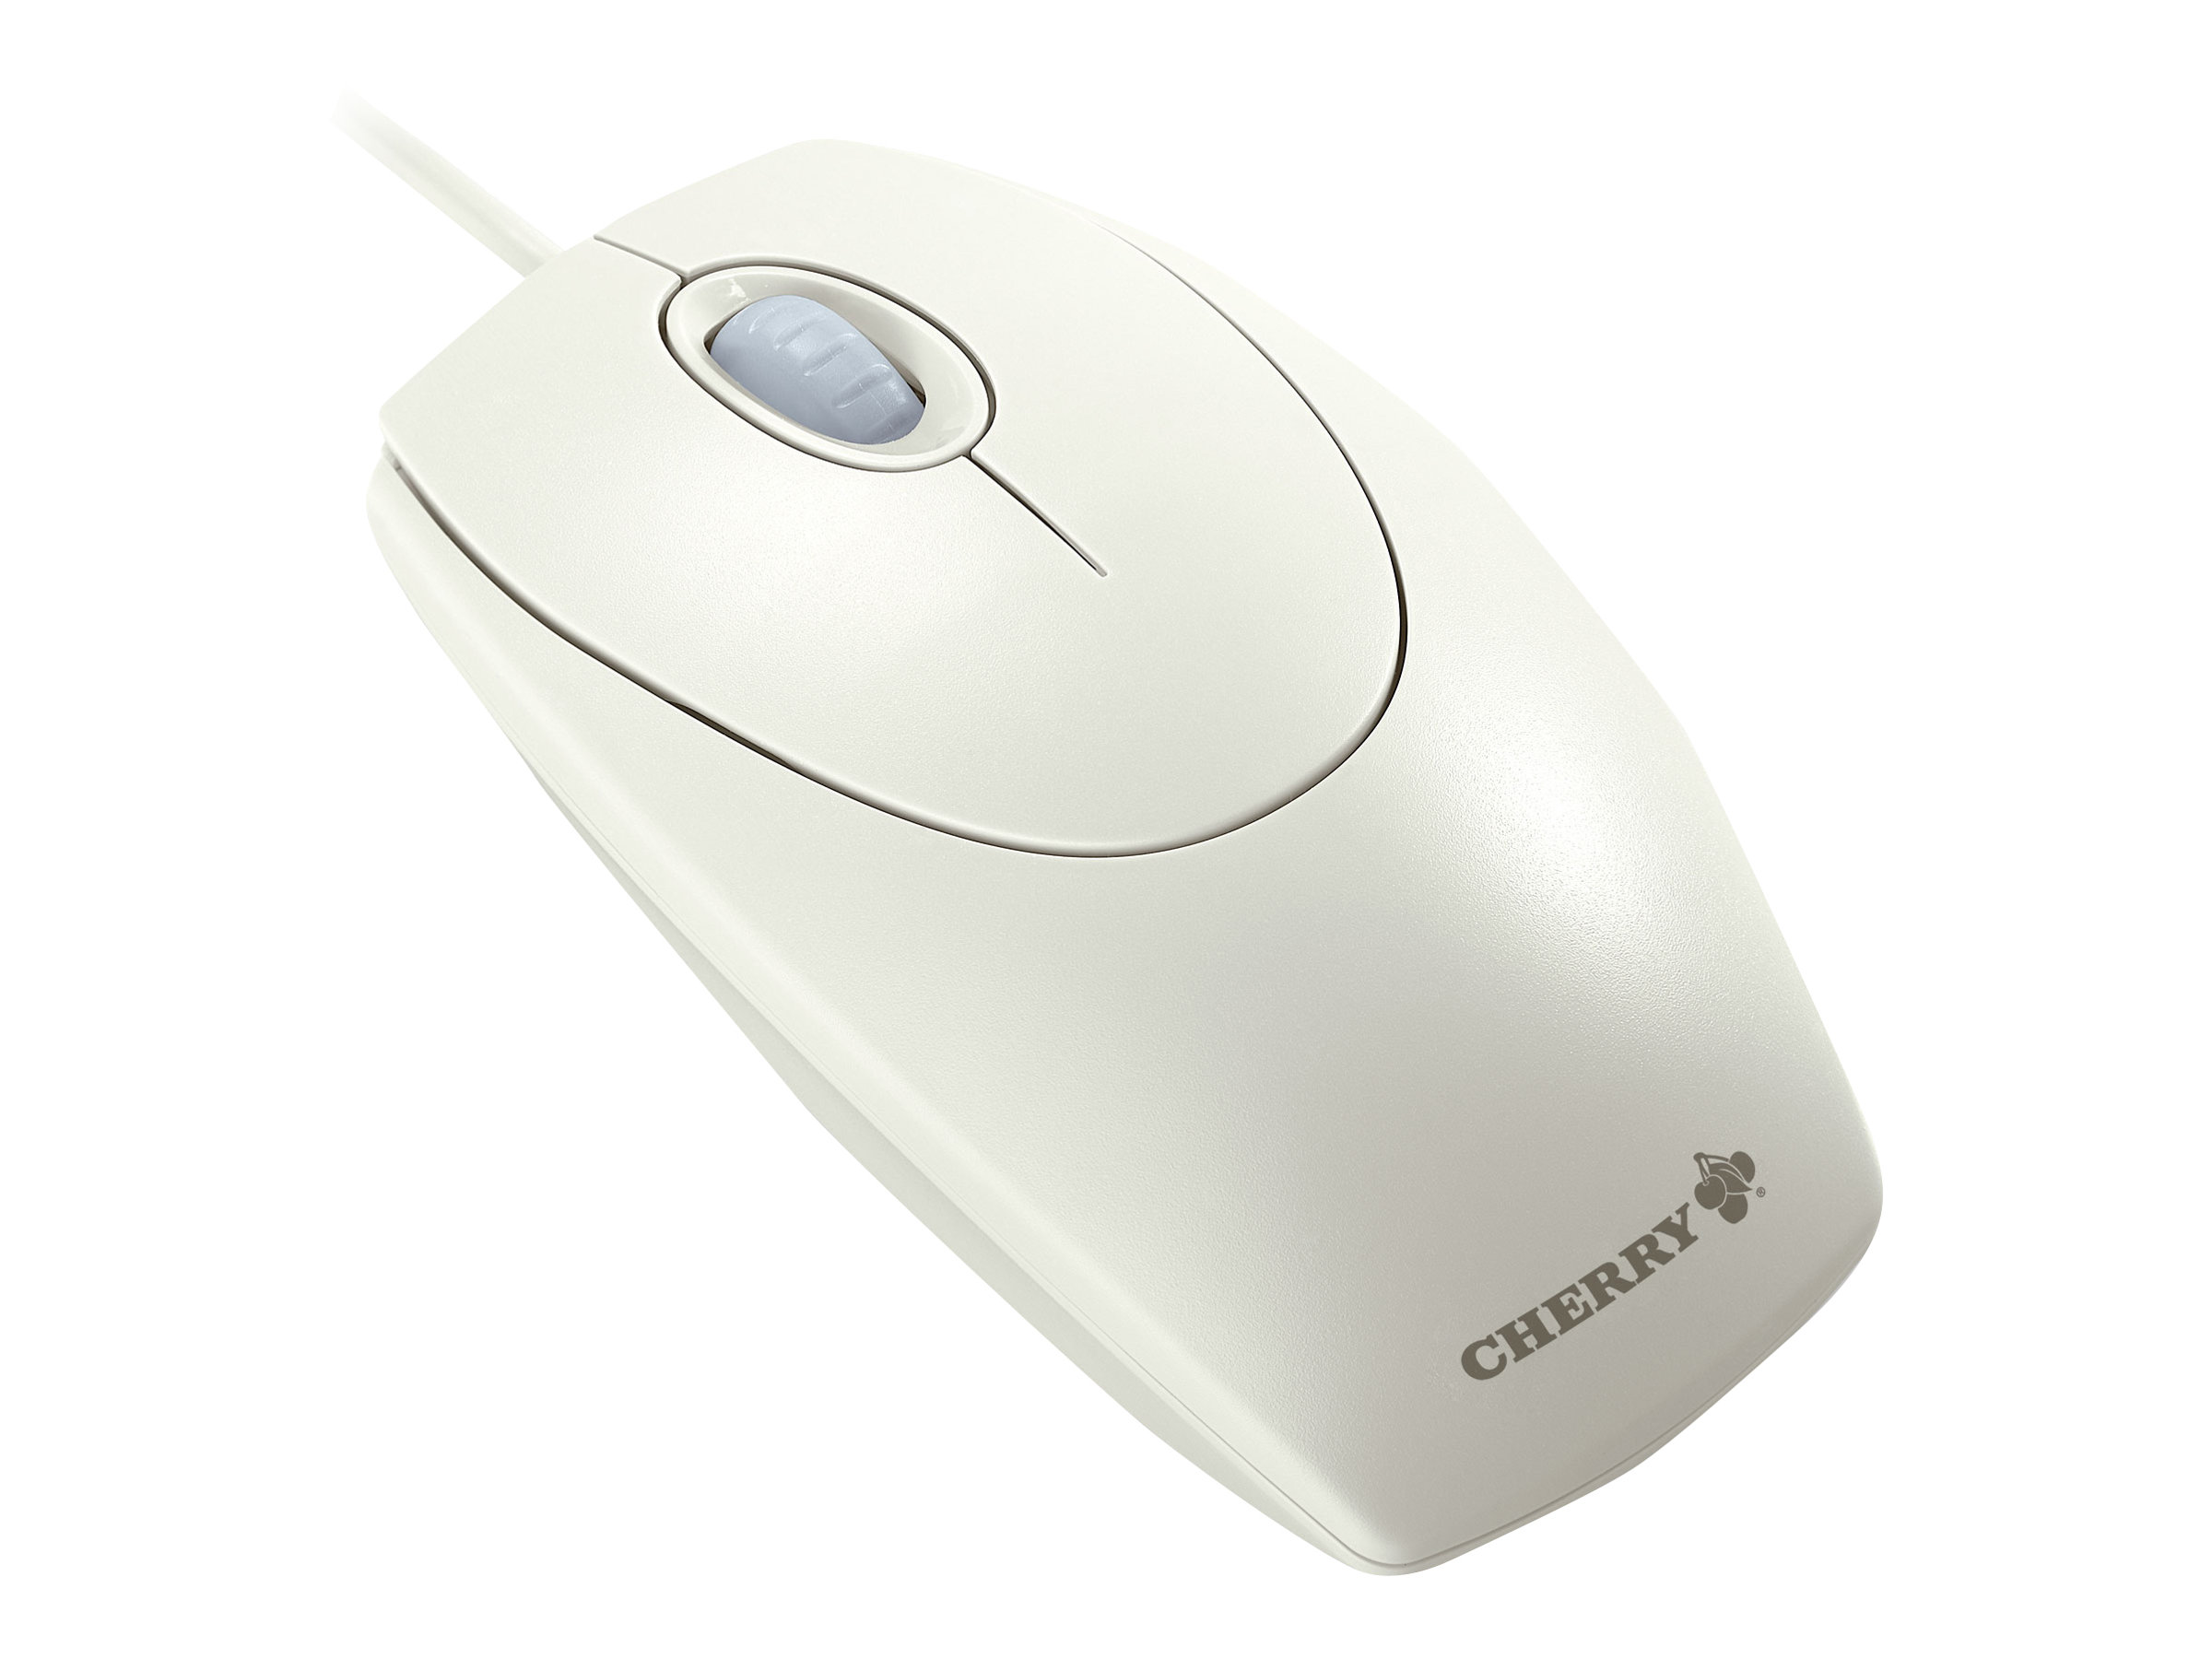 Cherry Wheel Mouse optical USB 1000 dpi white grey